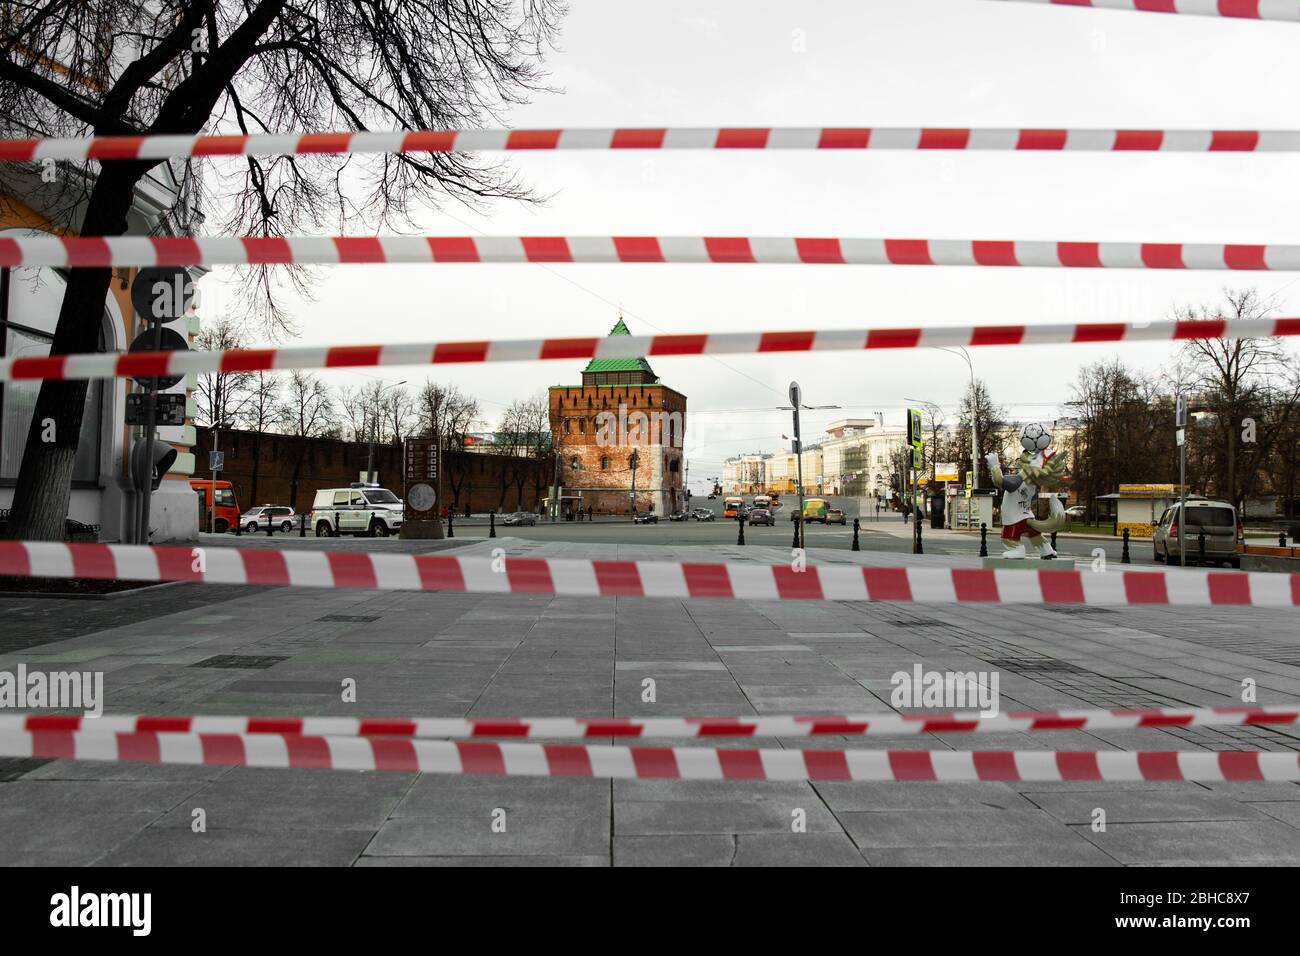 Russia, Nizhny Novgorod - 23 maggio 2020: Piazza Minin e Pozharsky senza persone. Blocco della strada. Foto Stock